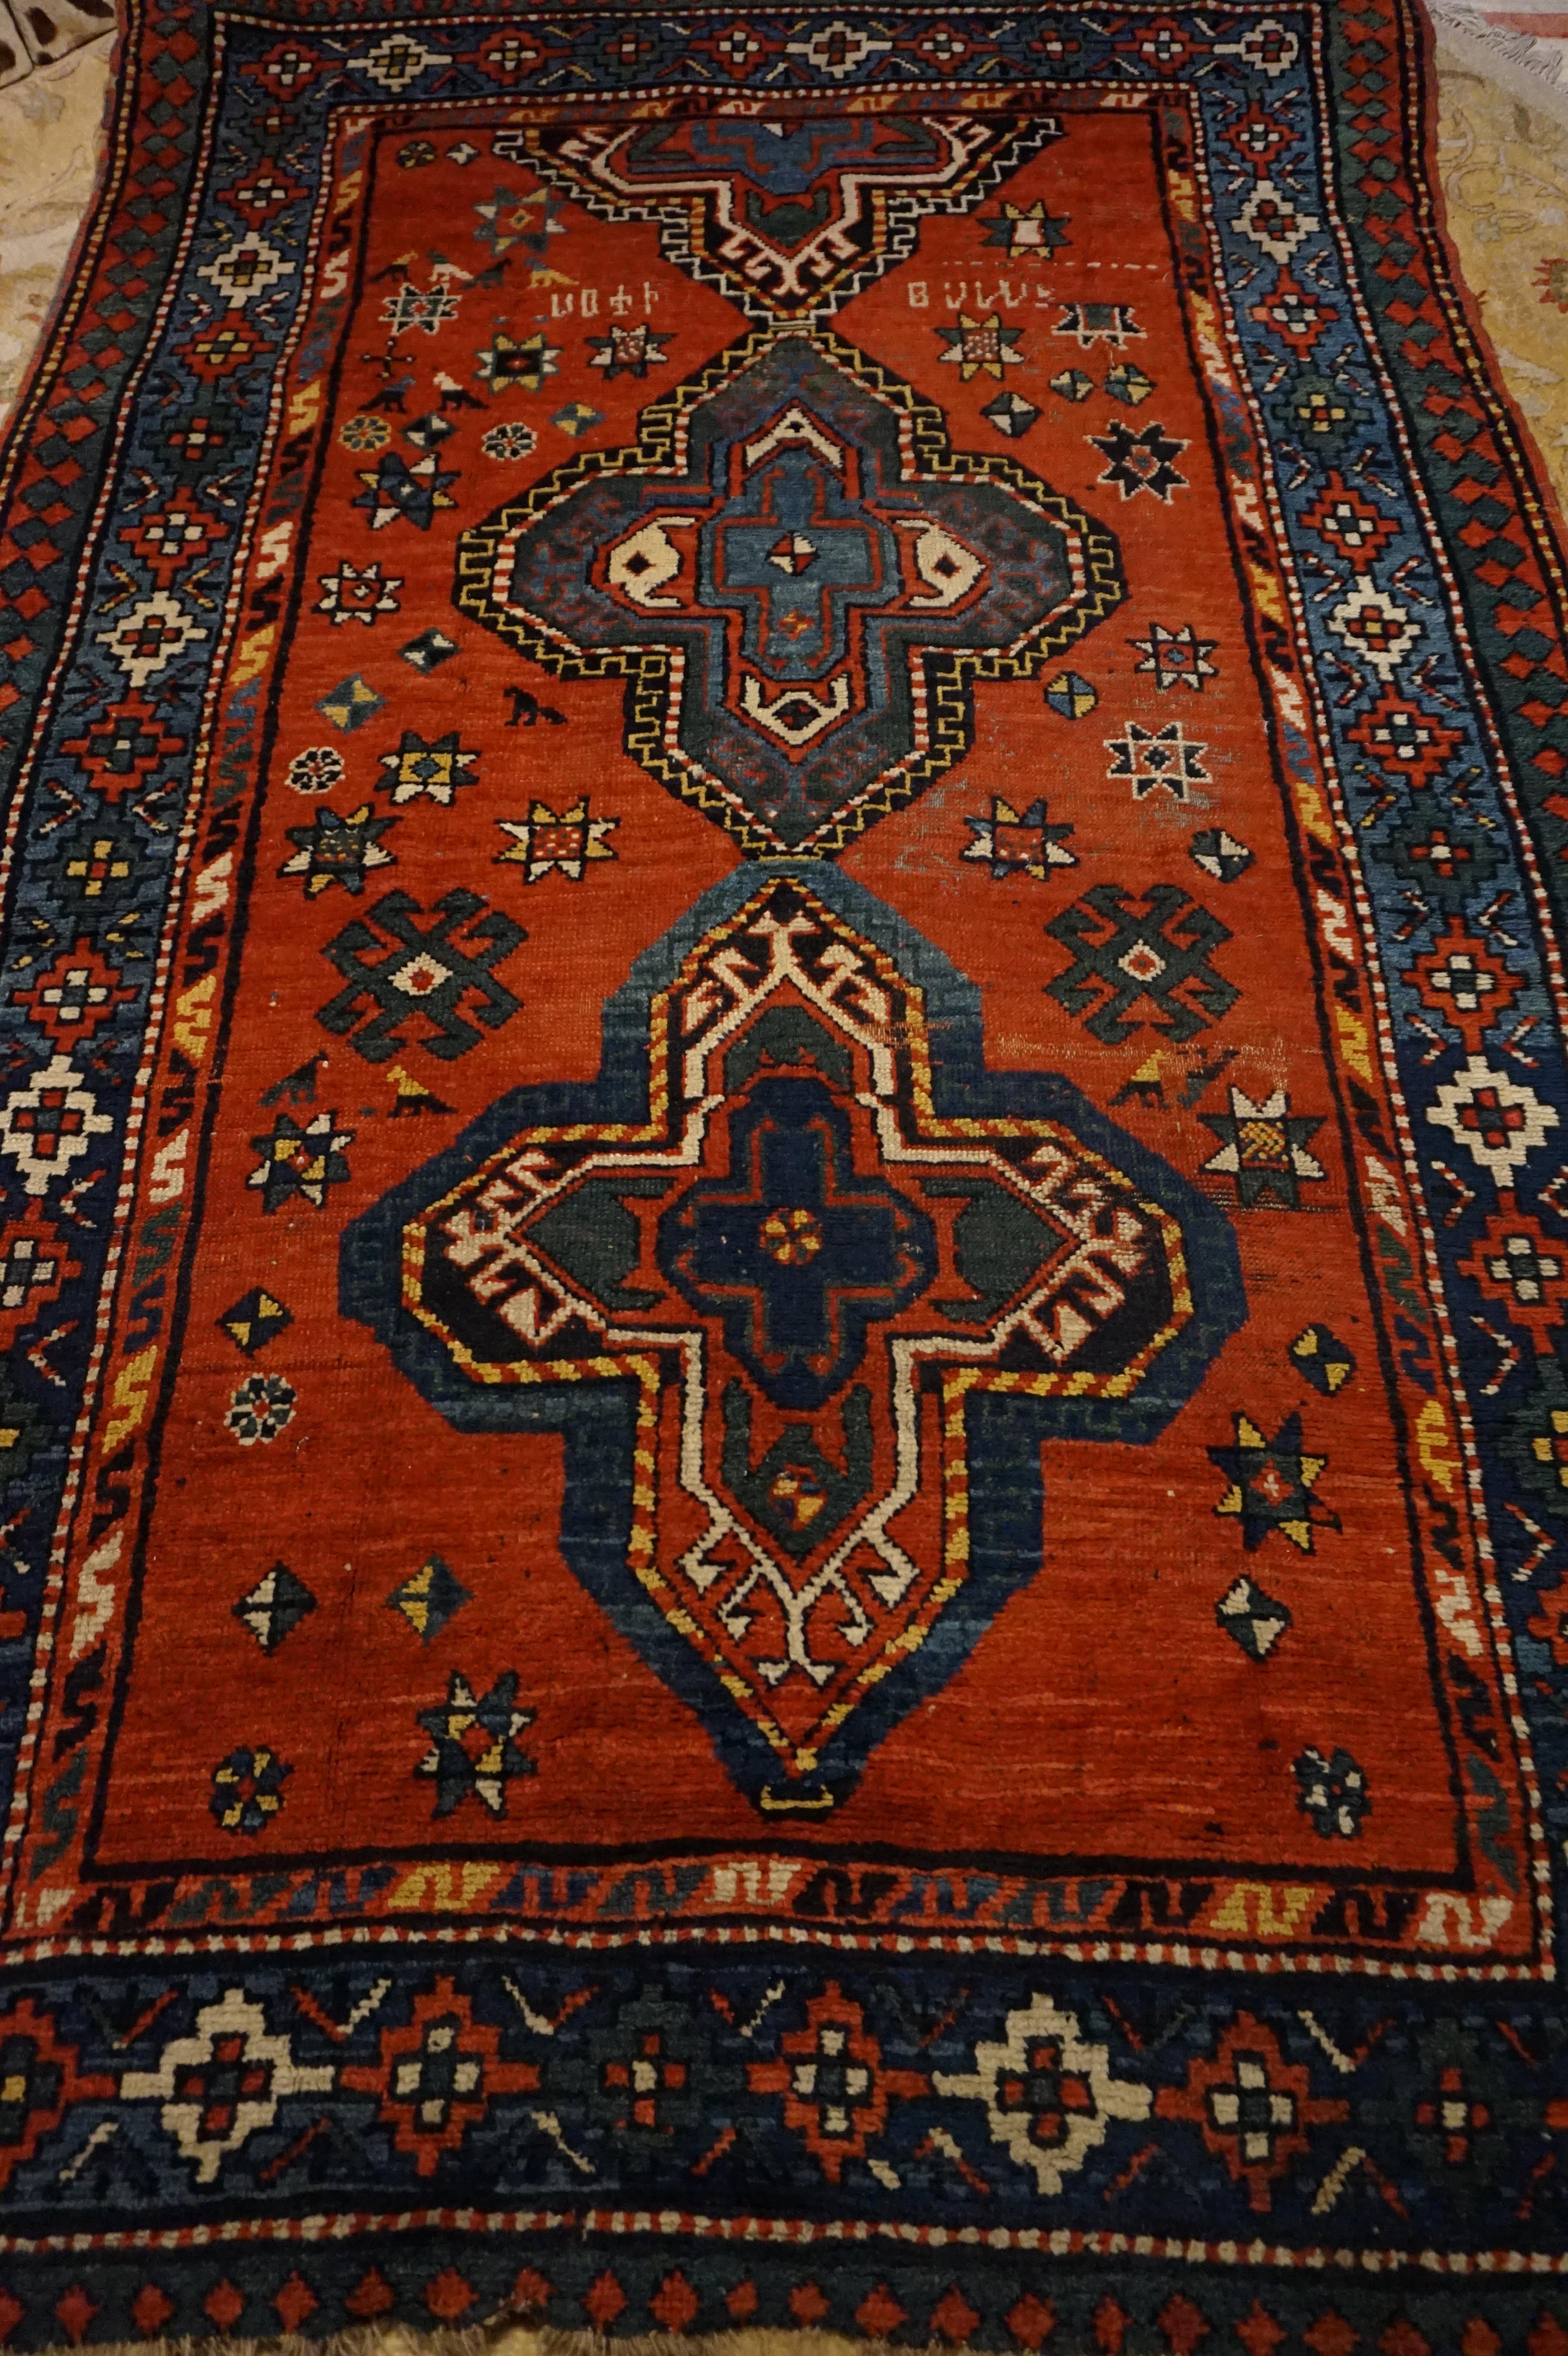 Charmant tapis rustique de village tribal de la région du Caucase avec des teintes naturelles vibrantes et un motif de médaillon cerf-volant asymétrique. De grands champs ouverts avec des signatures, des motifs d'étoiles et des couleurs vives et